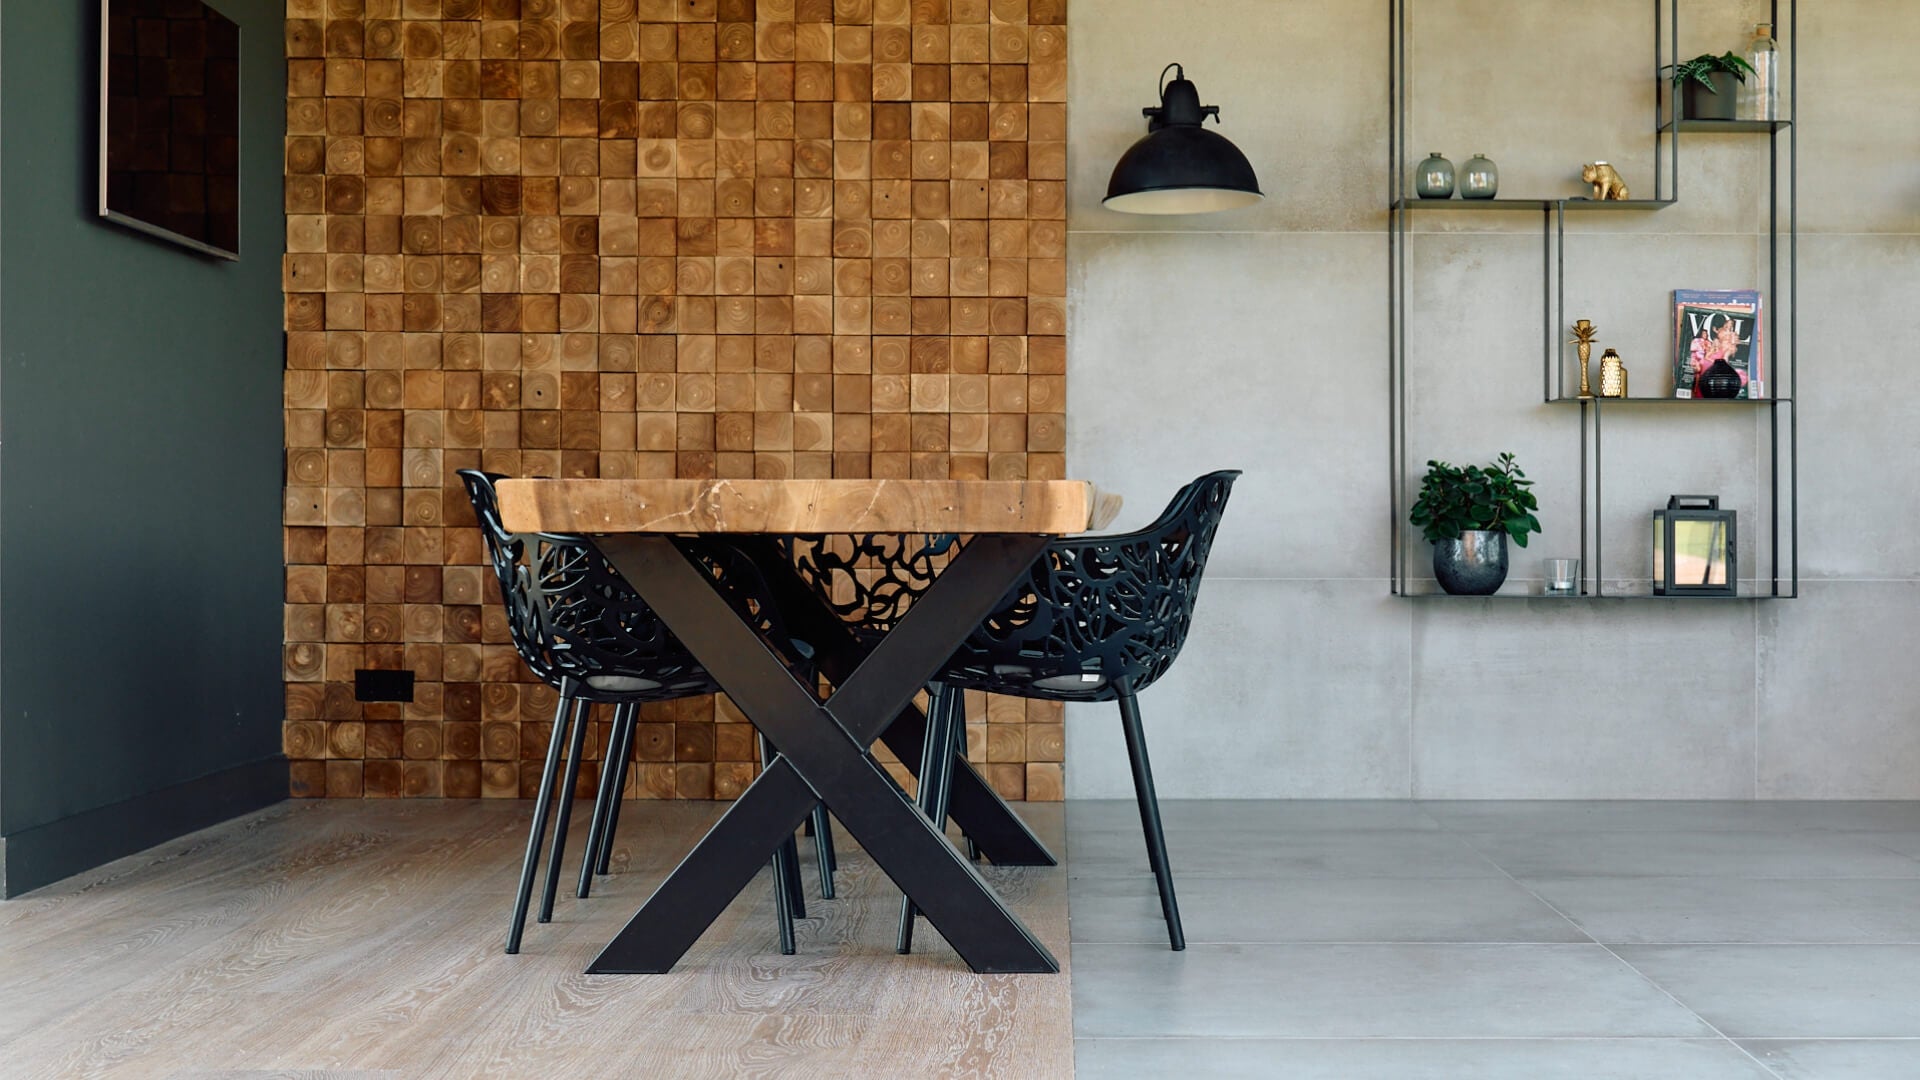 natuursteenvloer, houten vloer en kopshouten  metalen stoelen vormen een warm industrieel interieur